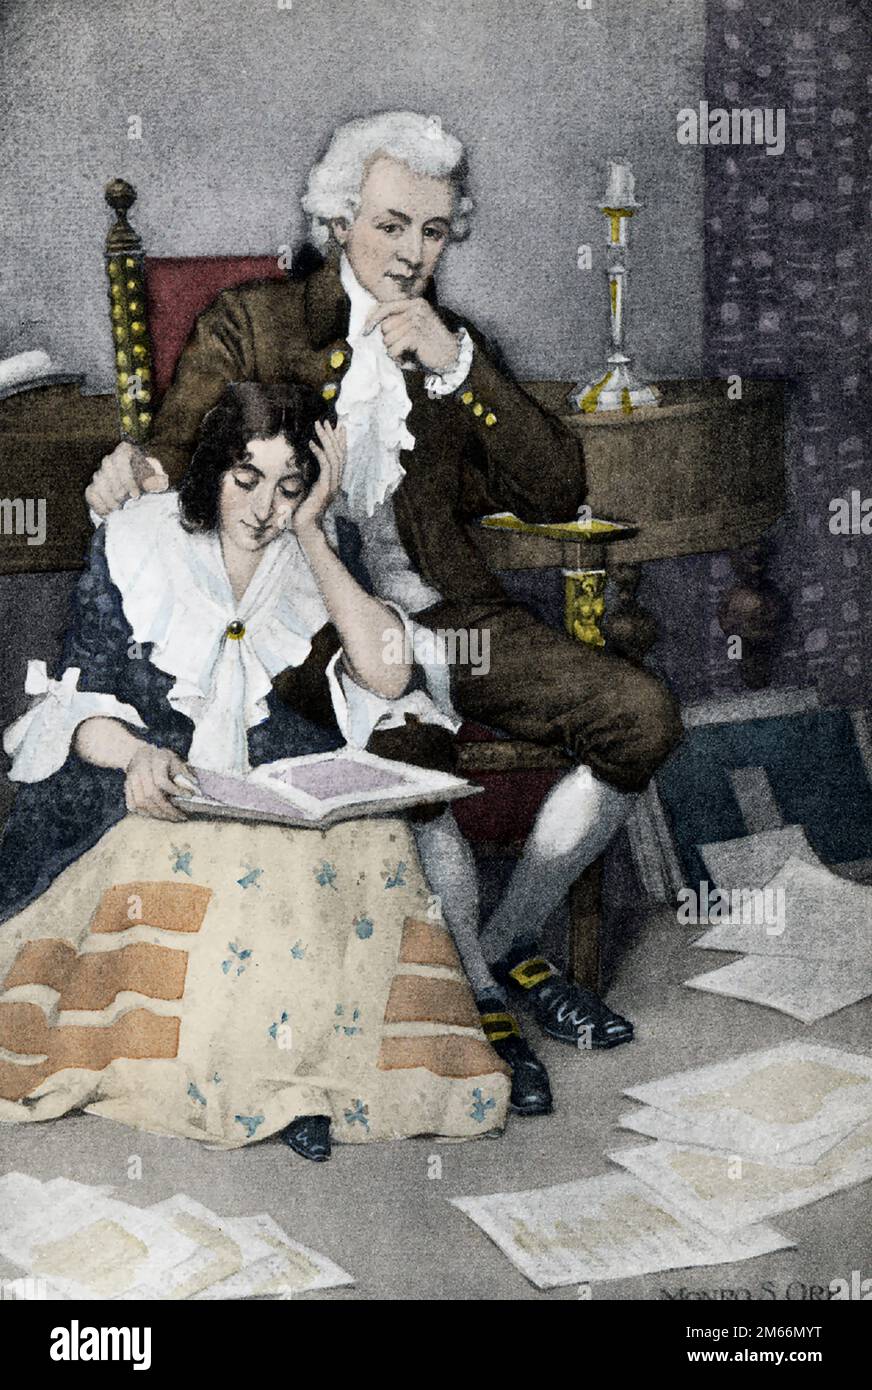 Cette illustration montre le compositeur autrichien Wolfgang Amadeus Mozart (1756-1791) et son épouse Constance. Mozart était un compositeur prolifique et influent de la période classique. Malgré sa courte vie, son rythme rapide de composition a donné lieu à plus de 800 œuvres de presque tous les genres de son temps. Banque D'Images